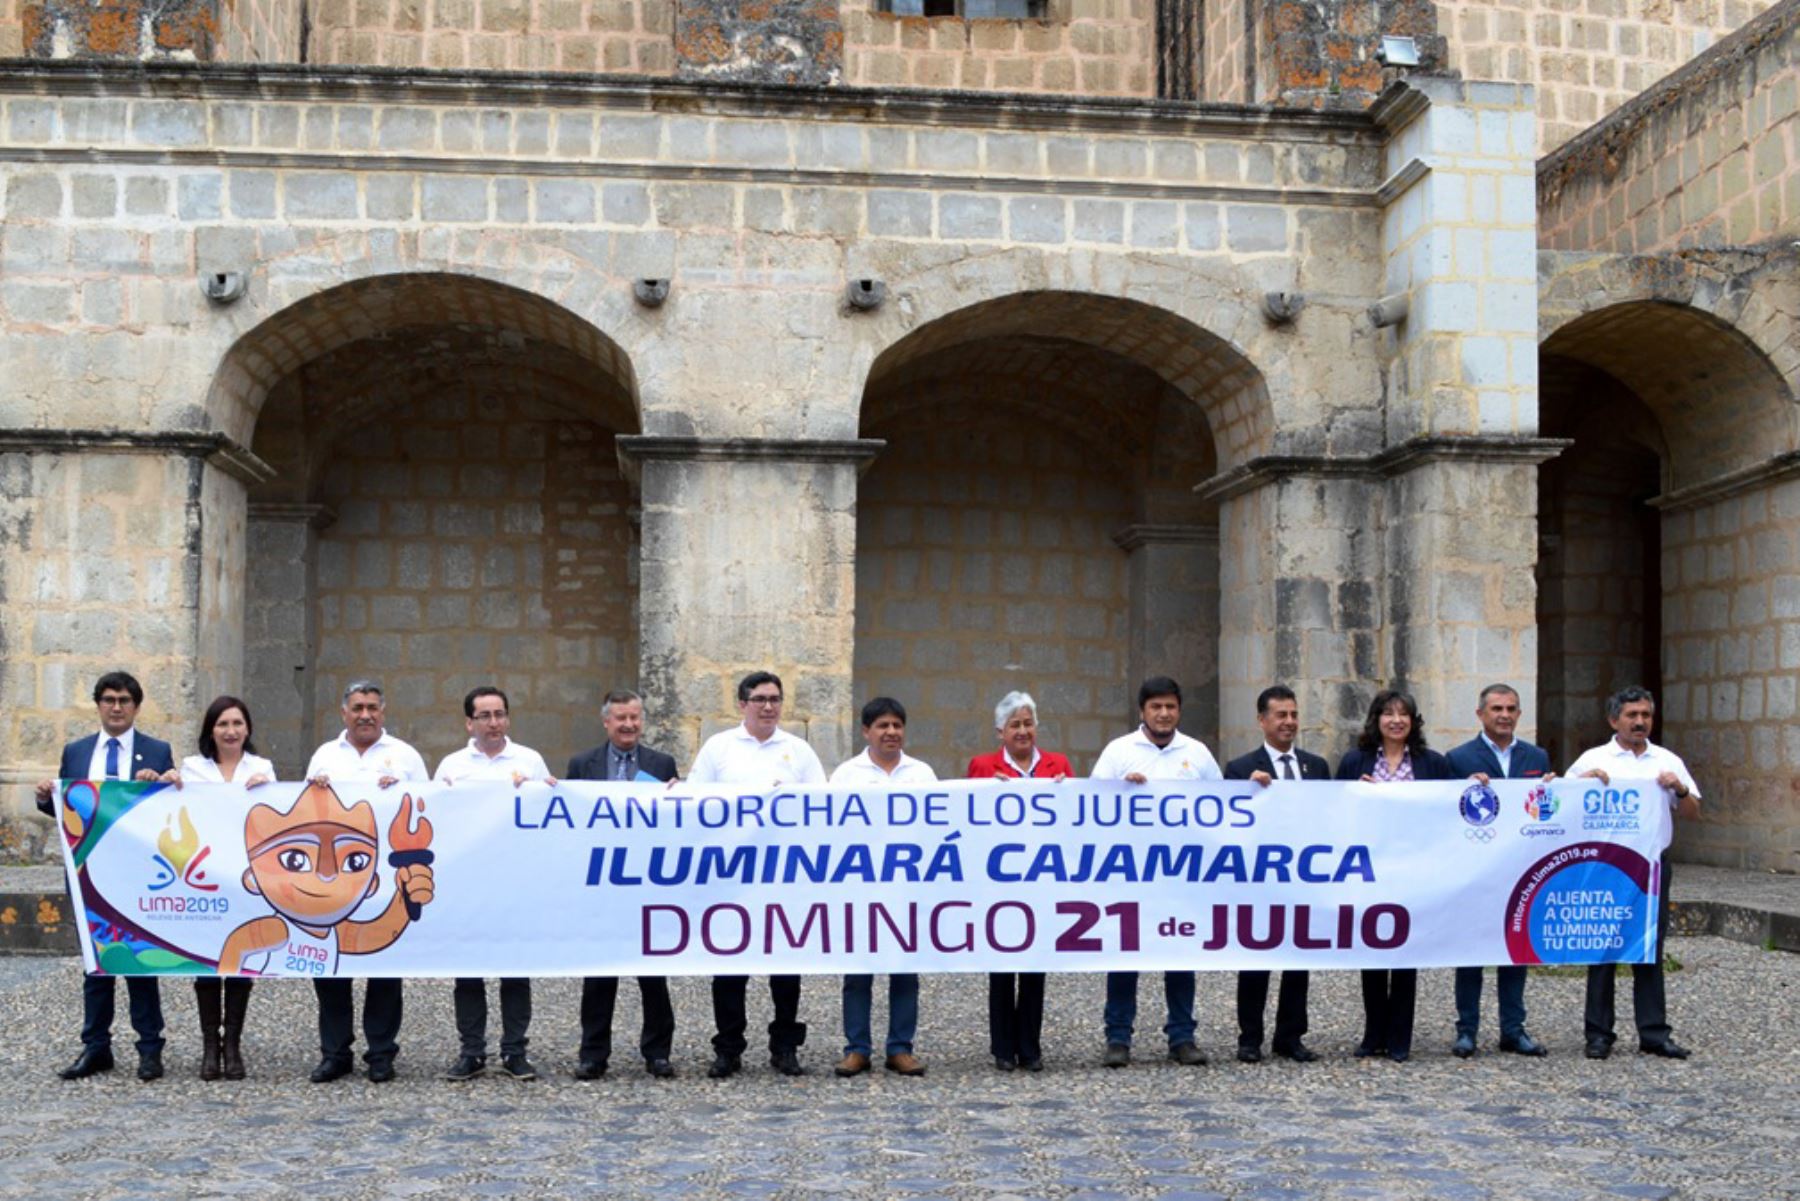 La Antorcha Panamericana llegarÃ¡ a Cajamarca el domingo 21 de julio y serÃ¡ portada por 42 deportistas de diversas disciplinas.